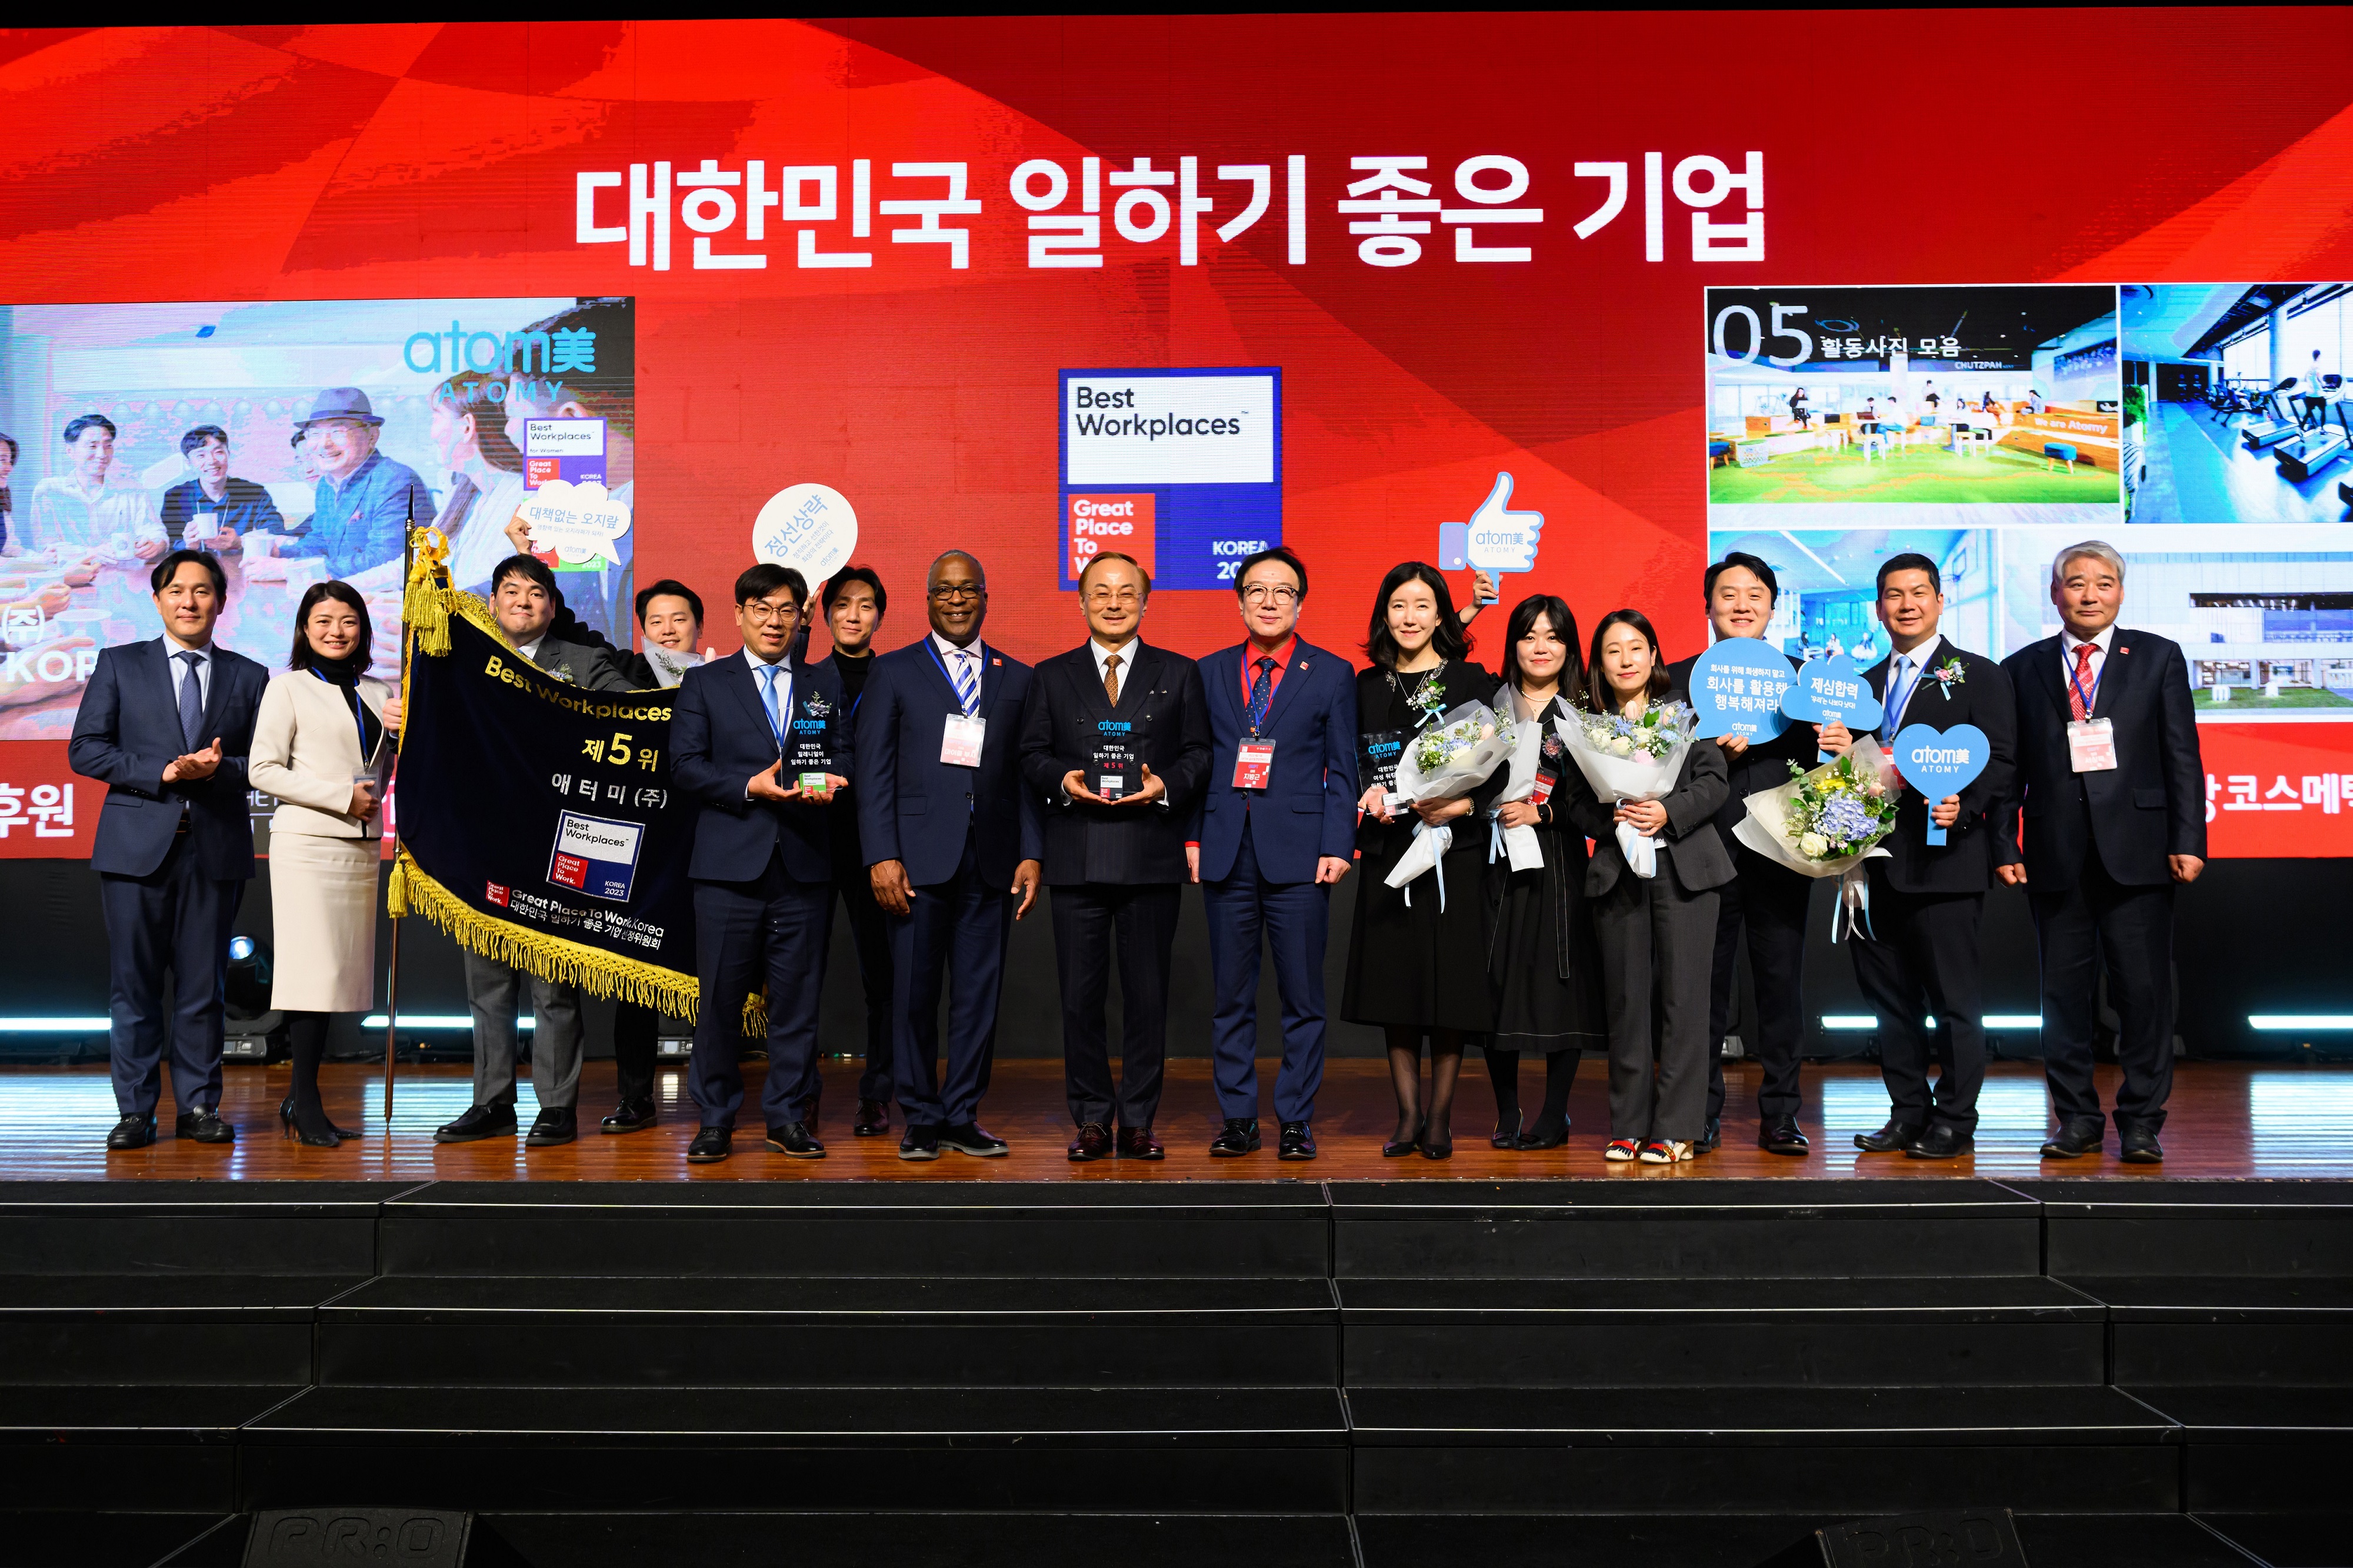 A Atomy está em 5º lugar na lista dos 'Melhores locais de trabalho', a mais alta entre as empresas coreanas